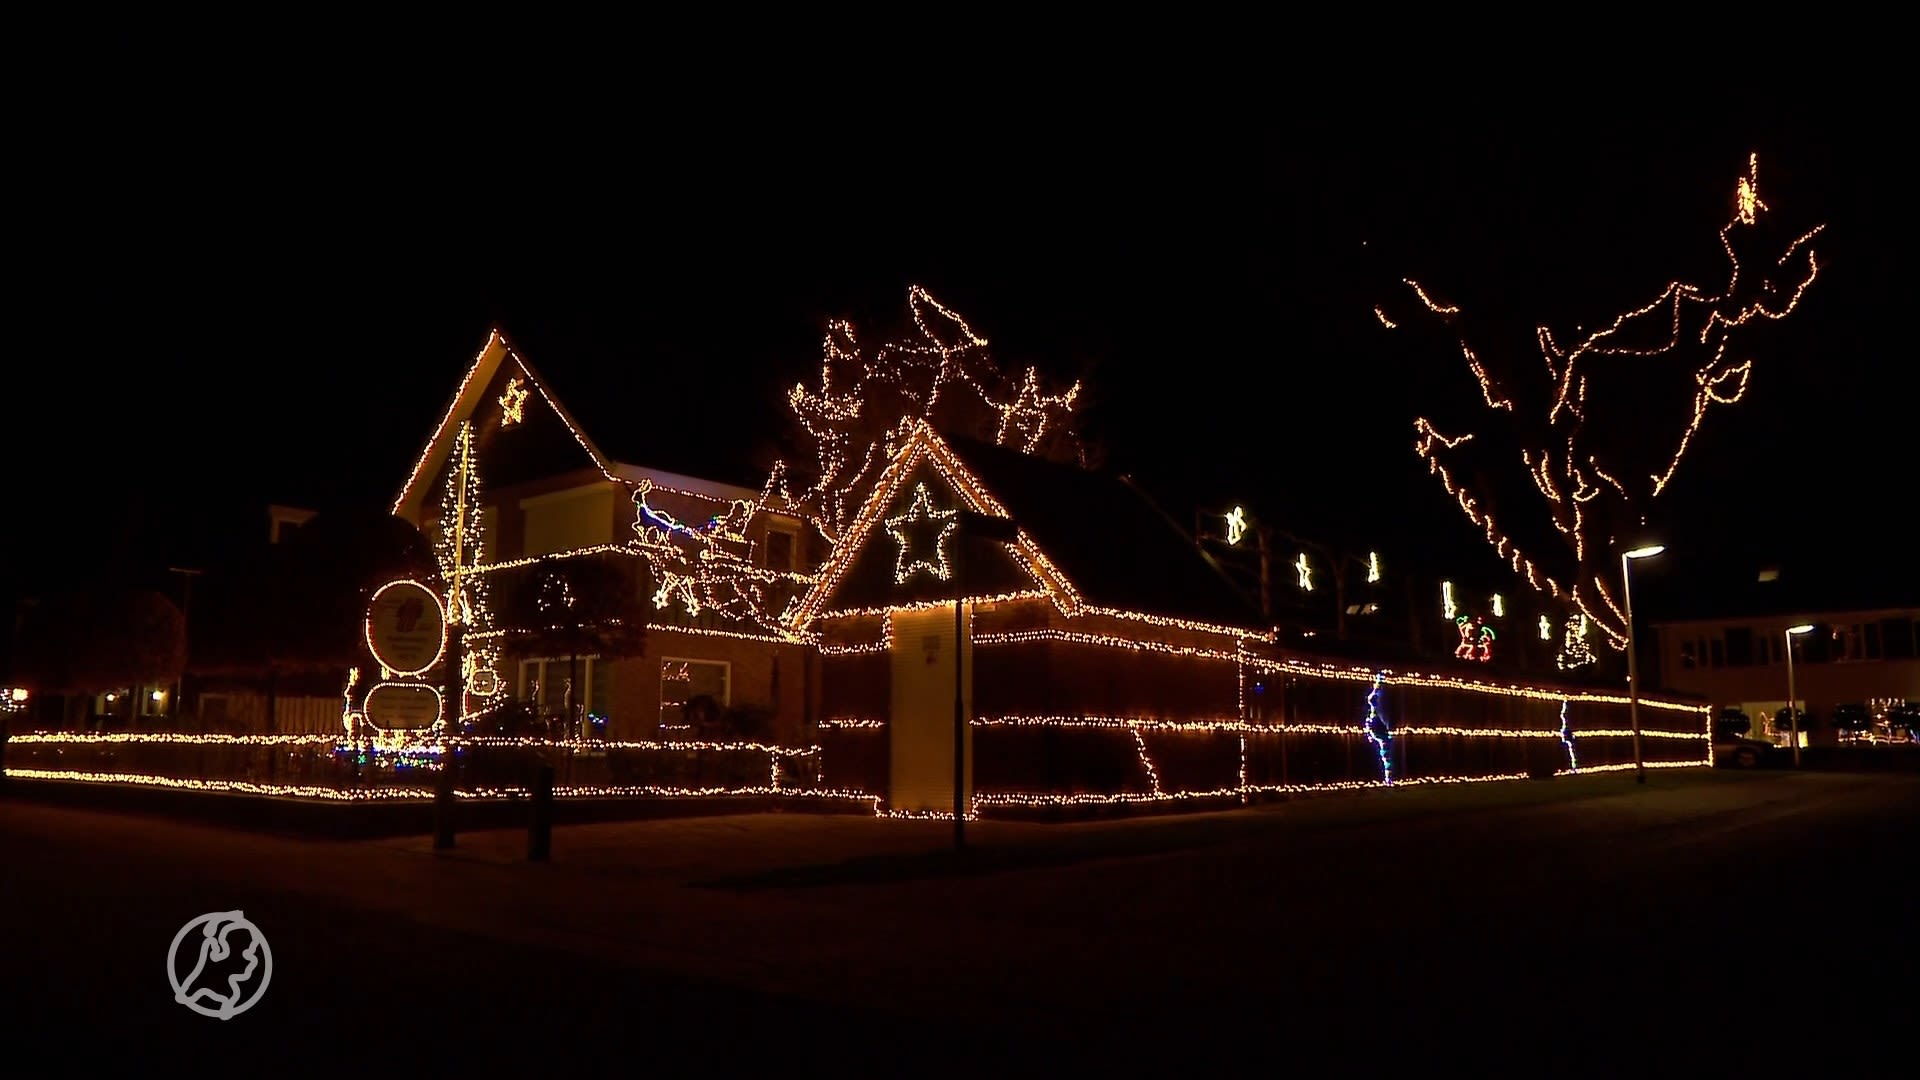 Het kersthuis van André  is versierd met maar liefst 140.000 lichtjes